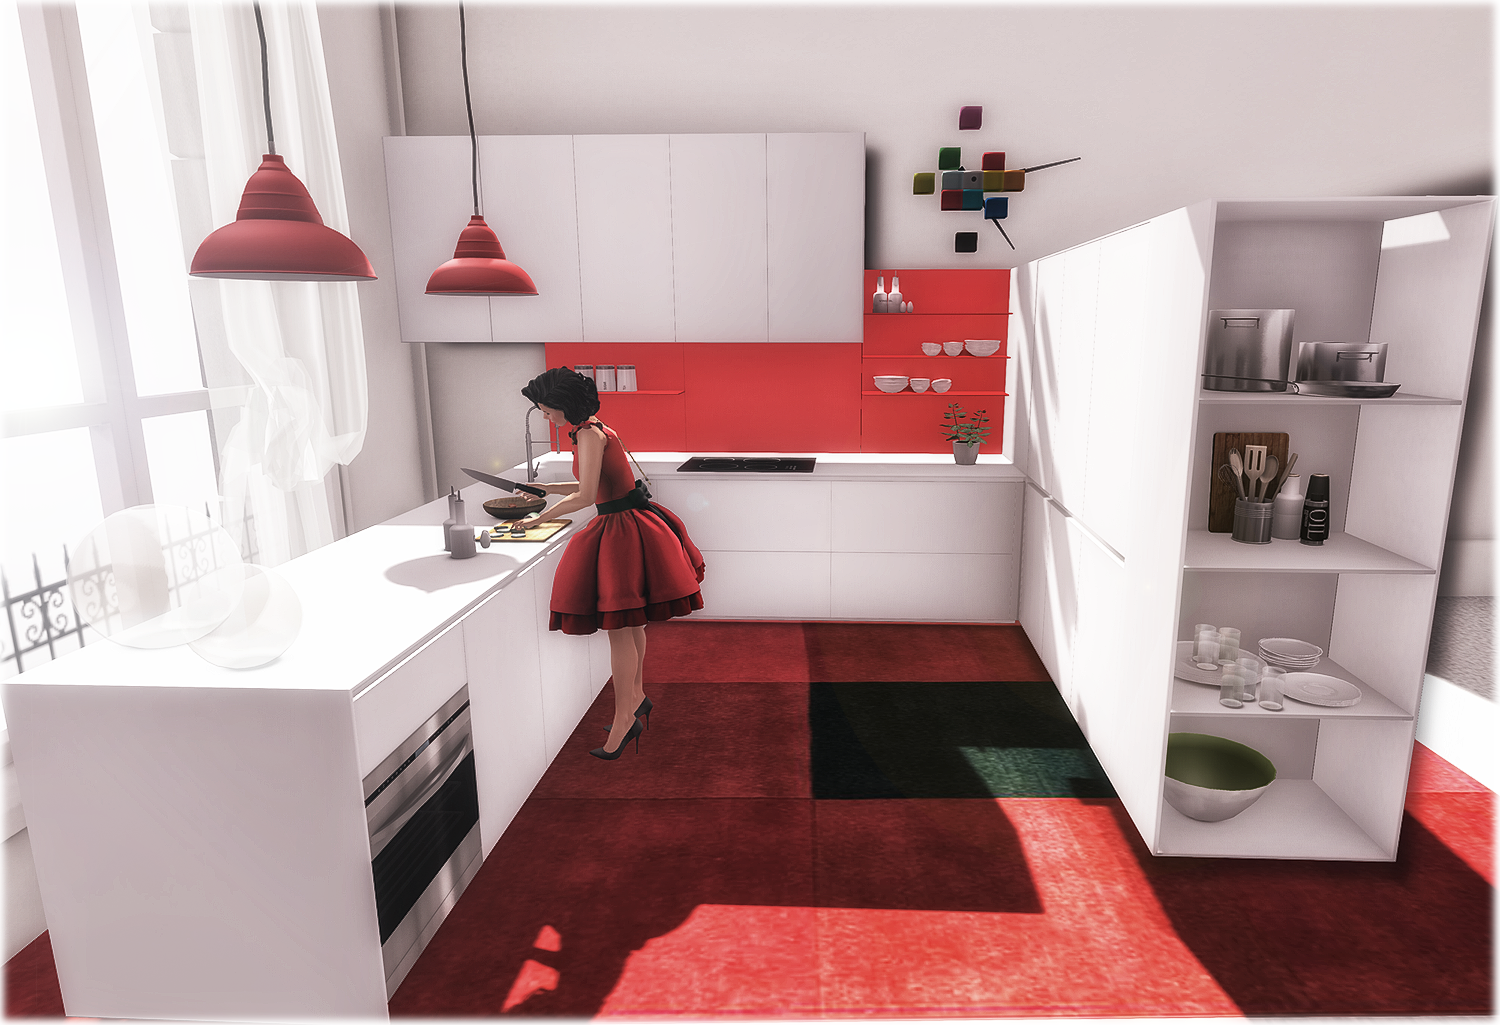 New kitchen by ARIA Interior